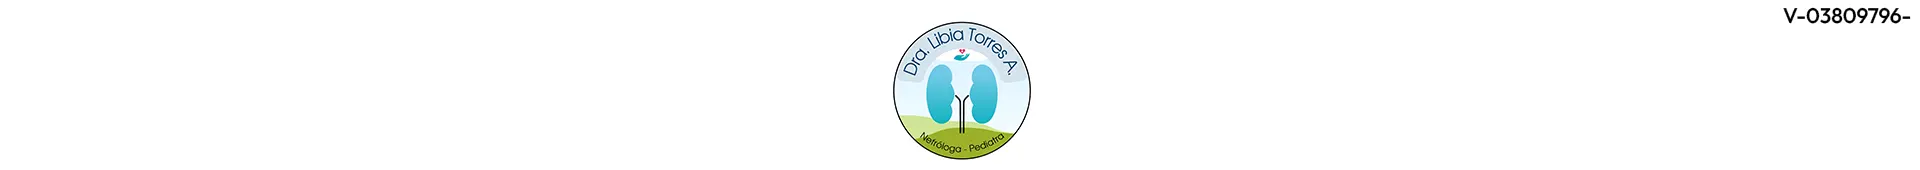 Imagen 1 del perfil de Dra. Libia Torres A.